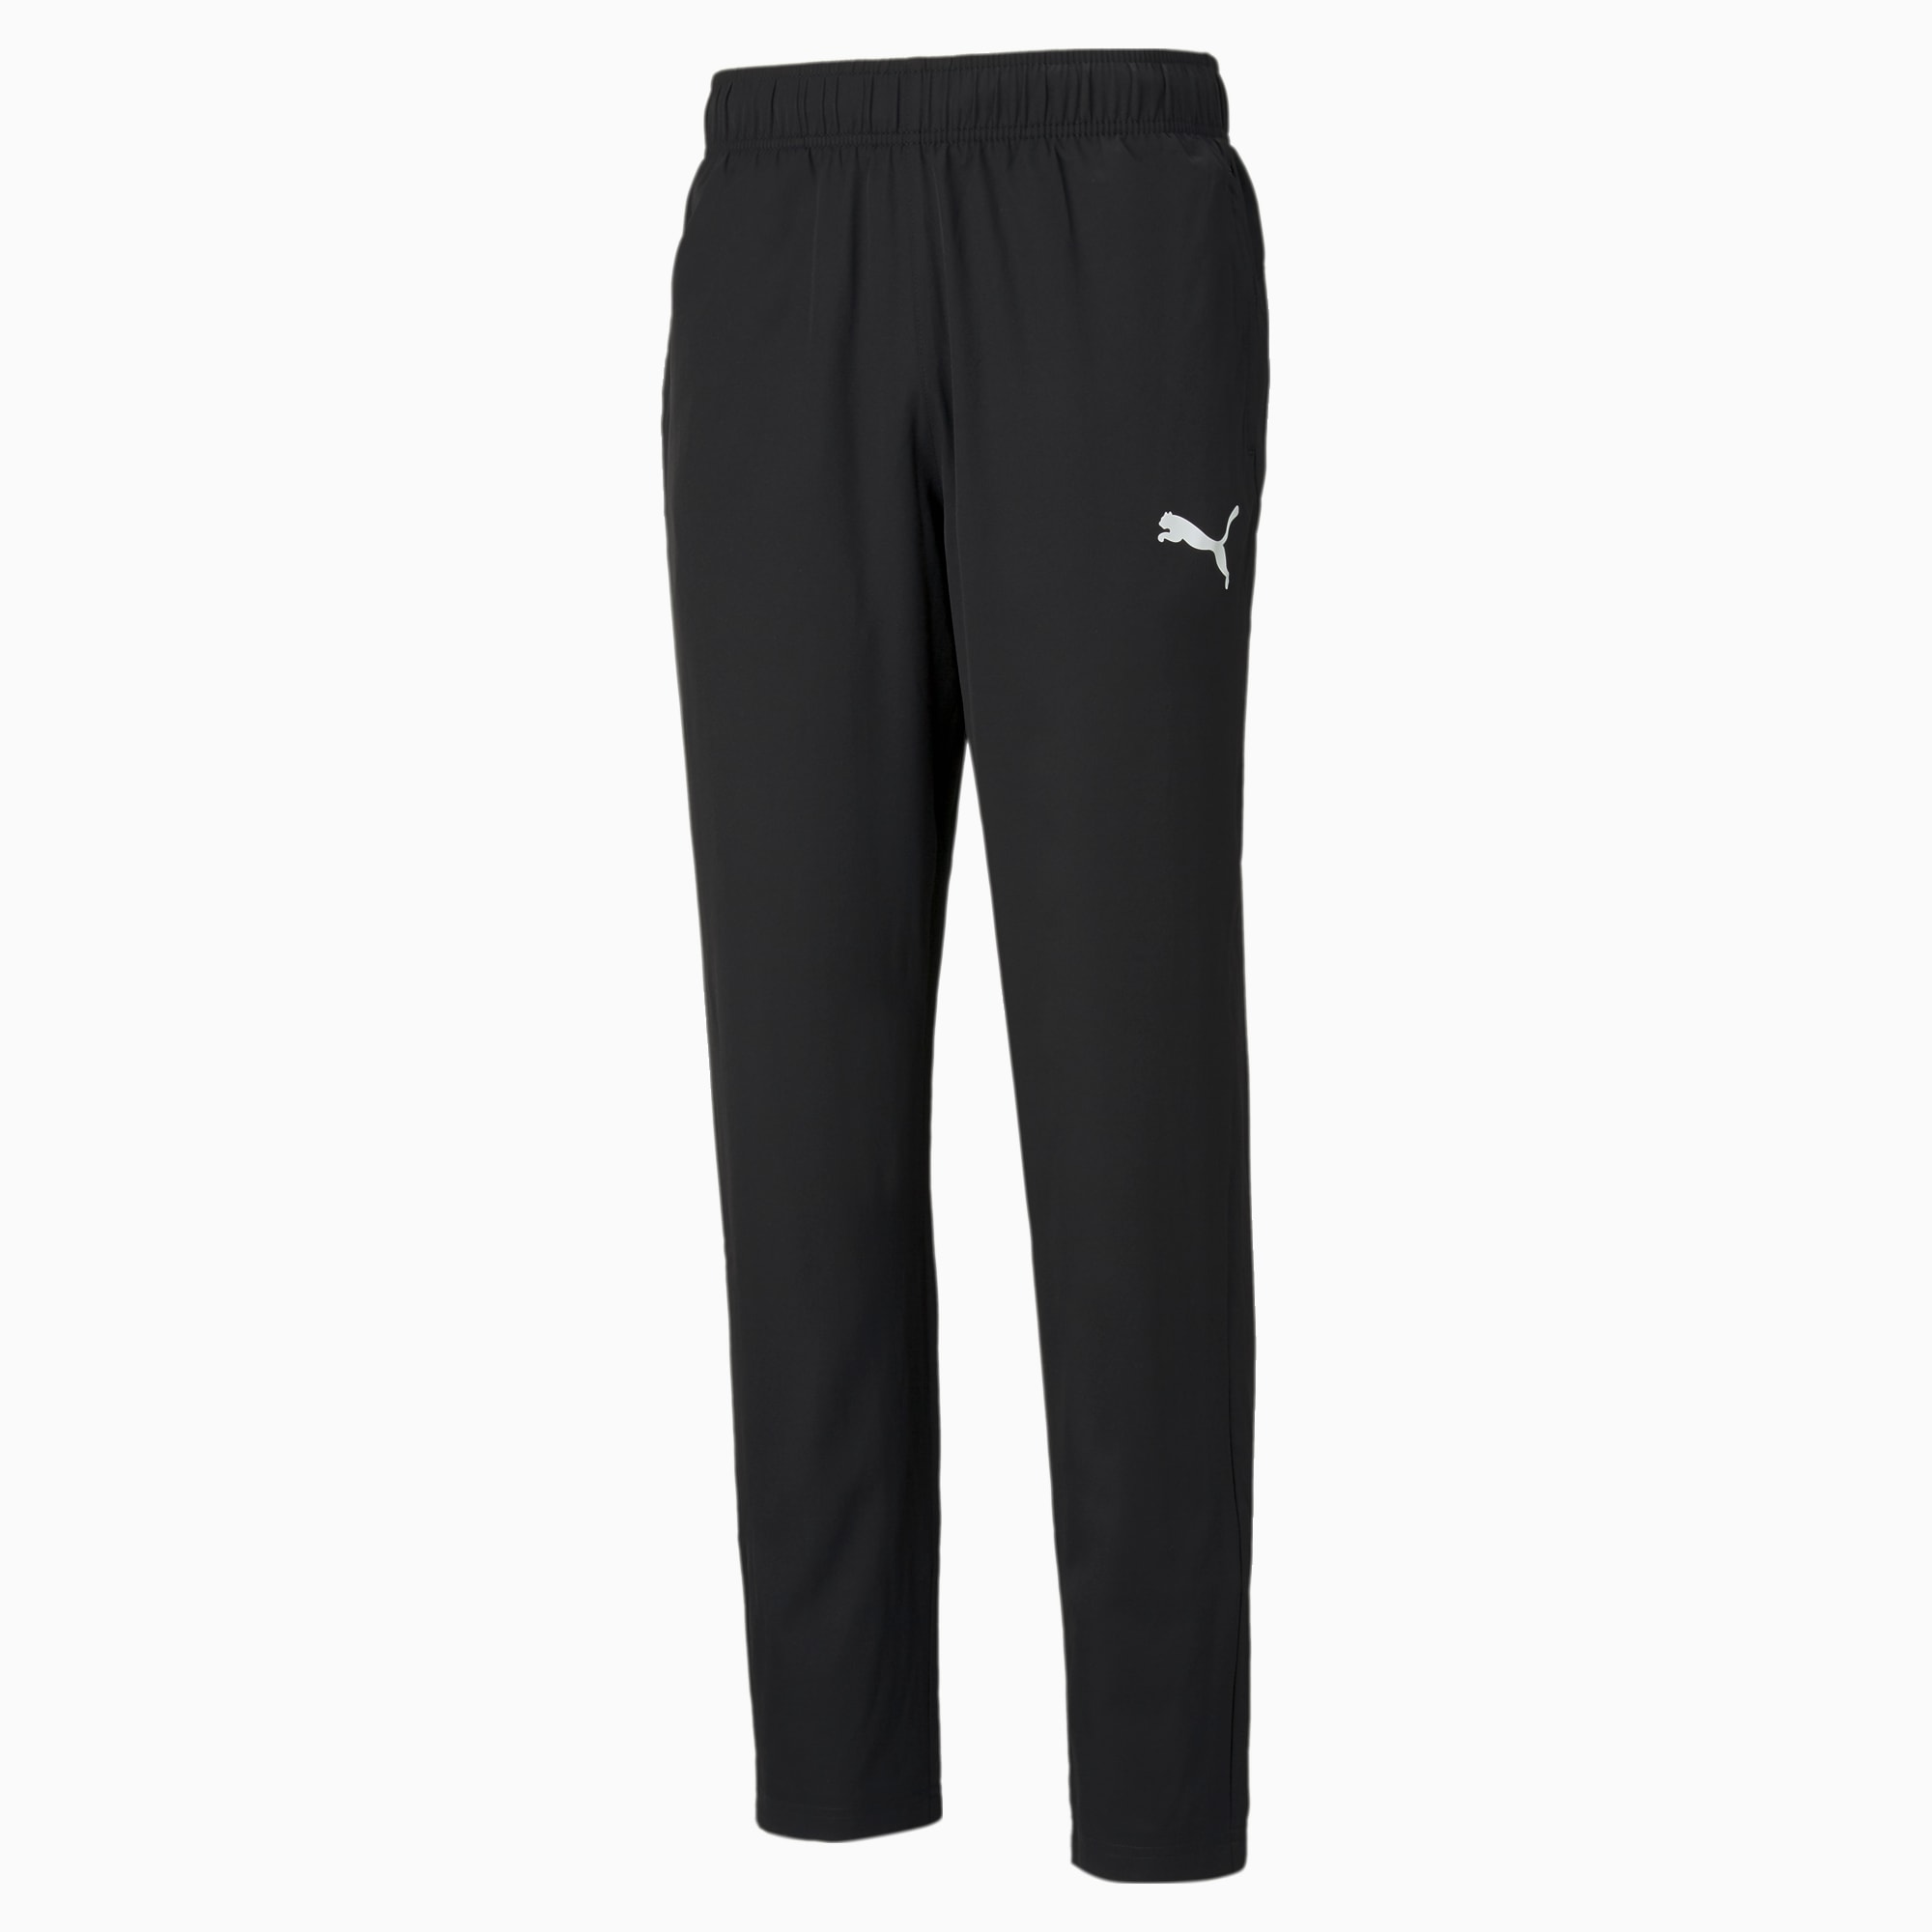 PUMA Active Woven Men's Sweatpants, Black, Size M, Clothing